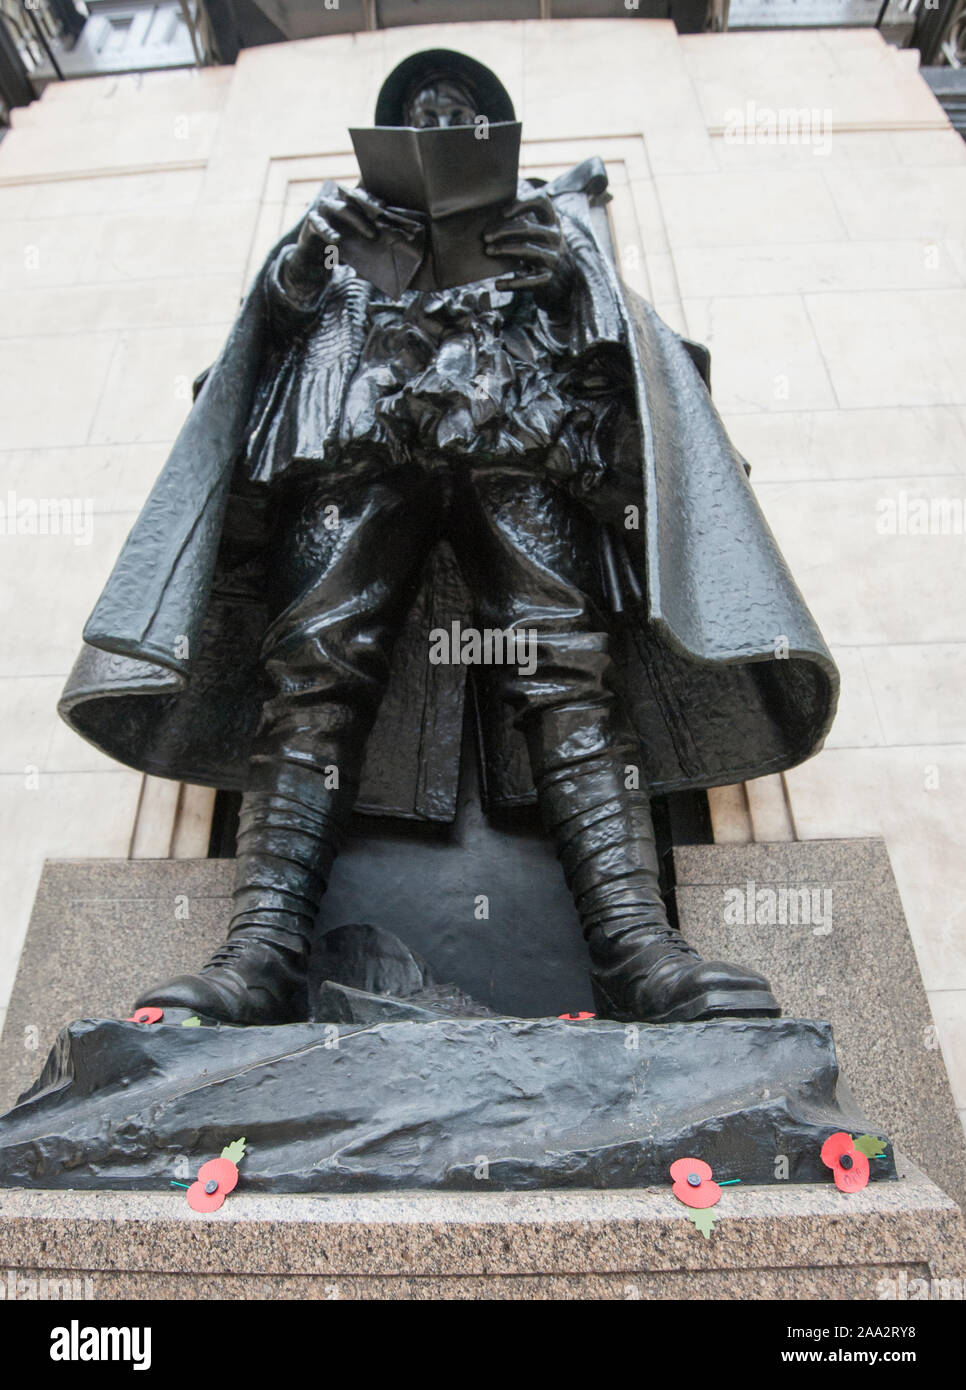 Statua del "Unknown Soldier" sulla piattaforma 1 in corrispondenza della stazione di Paddington a Londra. Varie celebrità come pure anonimo persone hanno contribuito ad un libro chiamato "lettera di un soldato sconosciuto', ispirato da questa statua di bronzo di un soldato in possesso di una lettera. Foto Stock